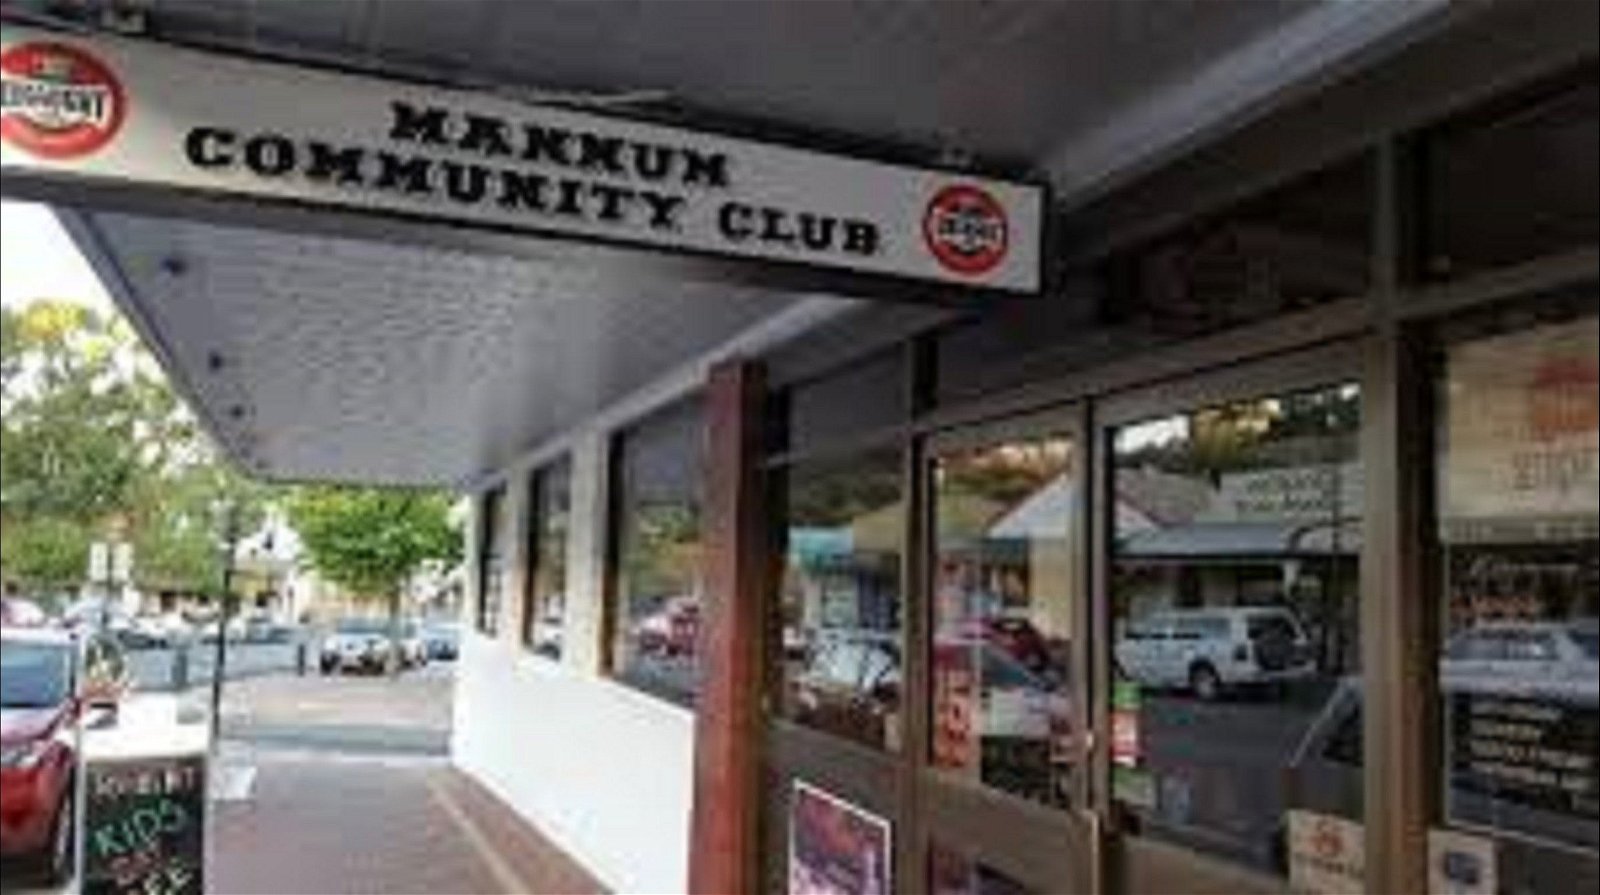 Mannum Community Club - Great Ocean Road Tourism